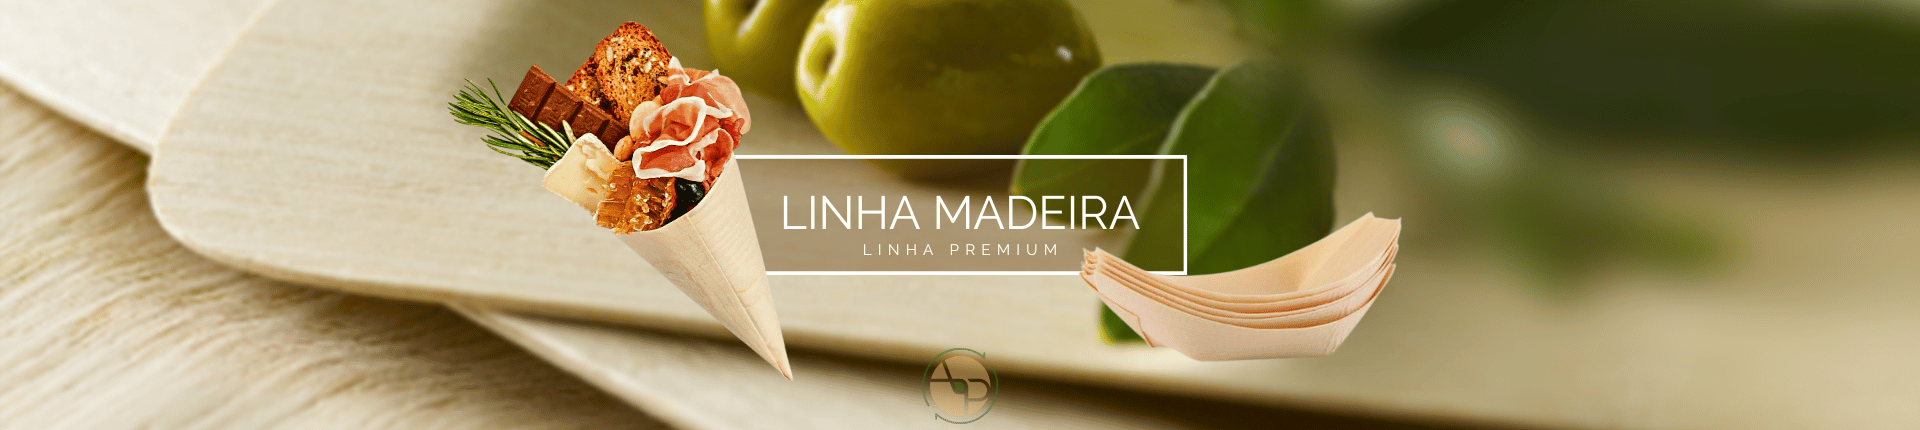 Full 3_Linha Madeira